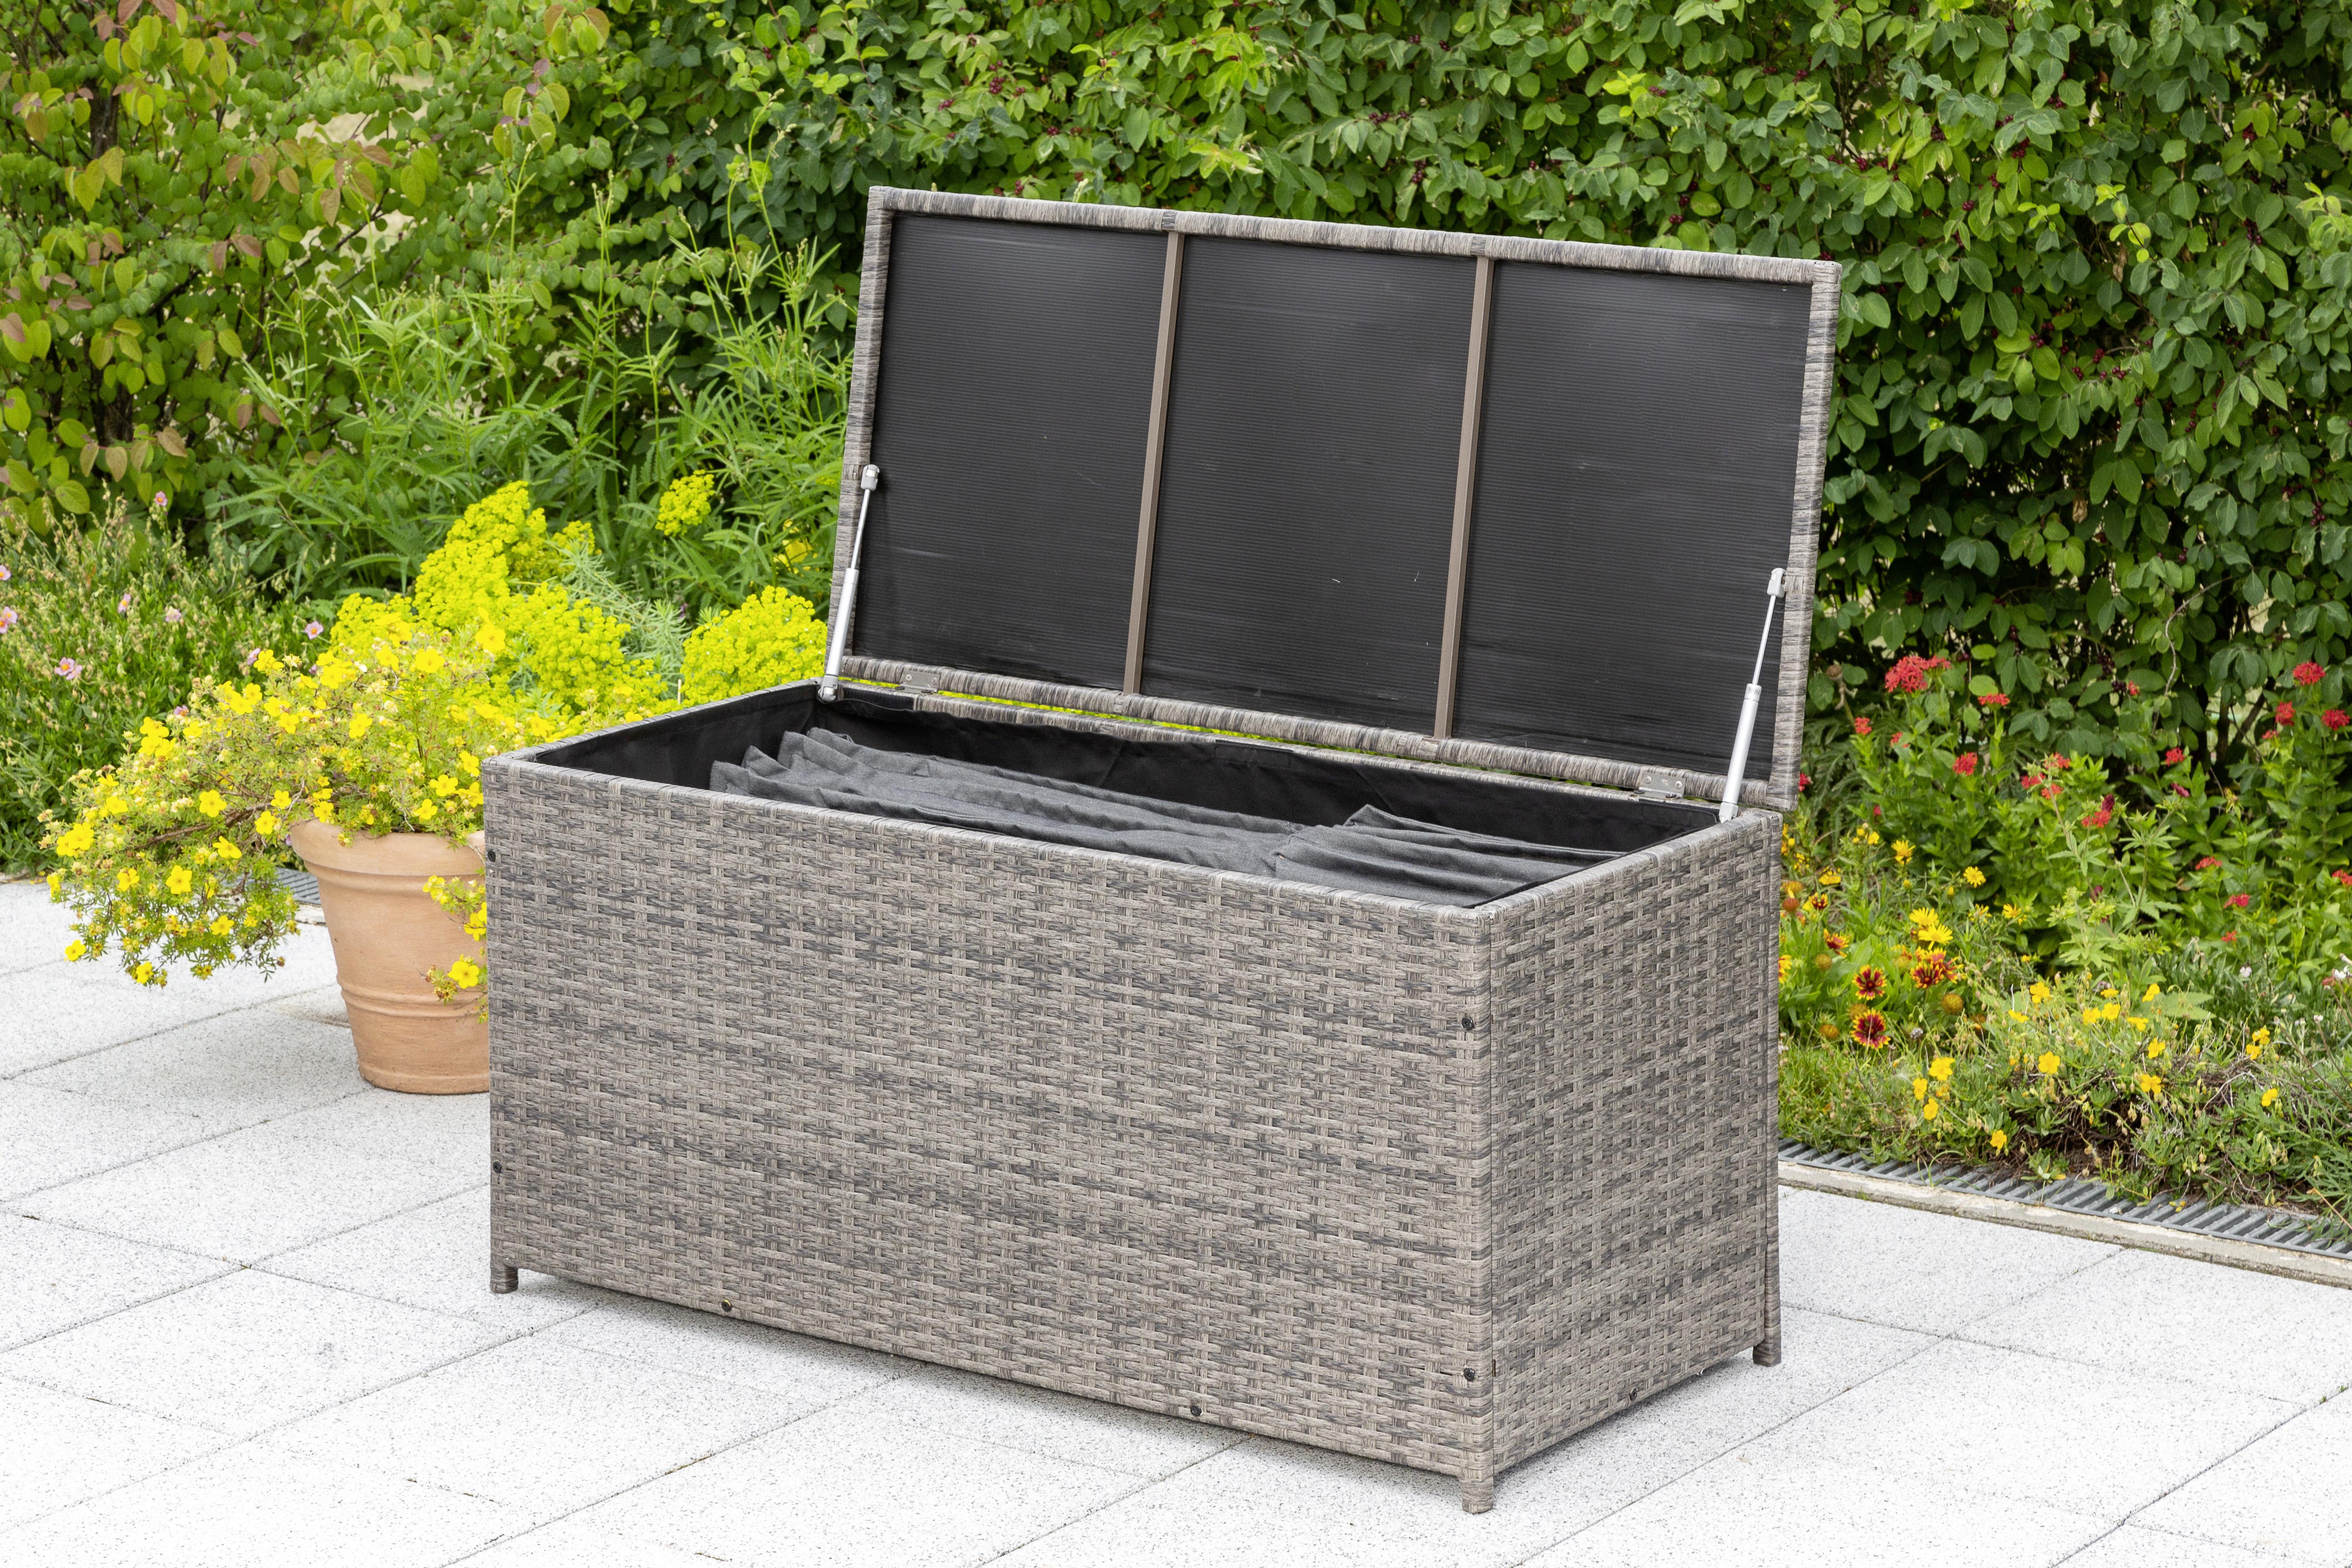 Kissenbox mit Aufklappbarem Deckel BxHxT: 123/54/60 cm - Grau, KONVENTIONELL, Kunststoff/Metall (123/54/60cm) - Ambia Garden